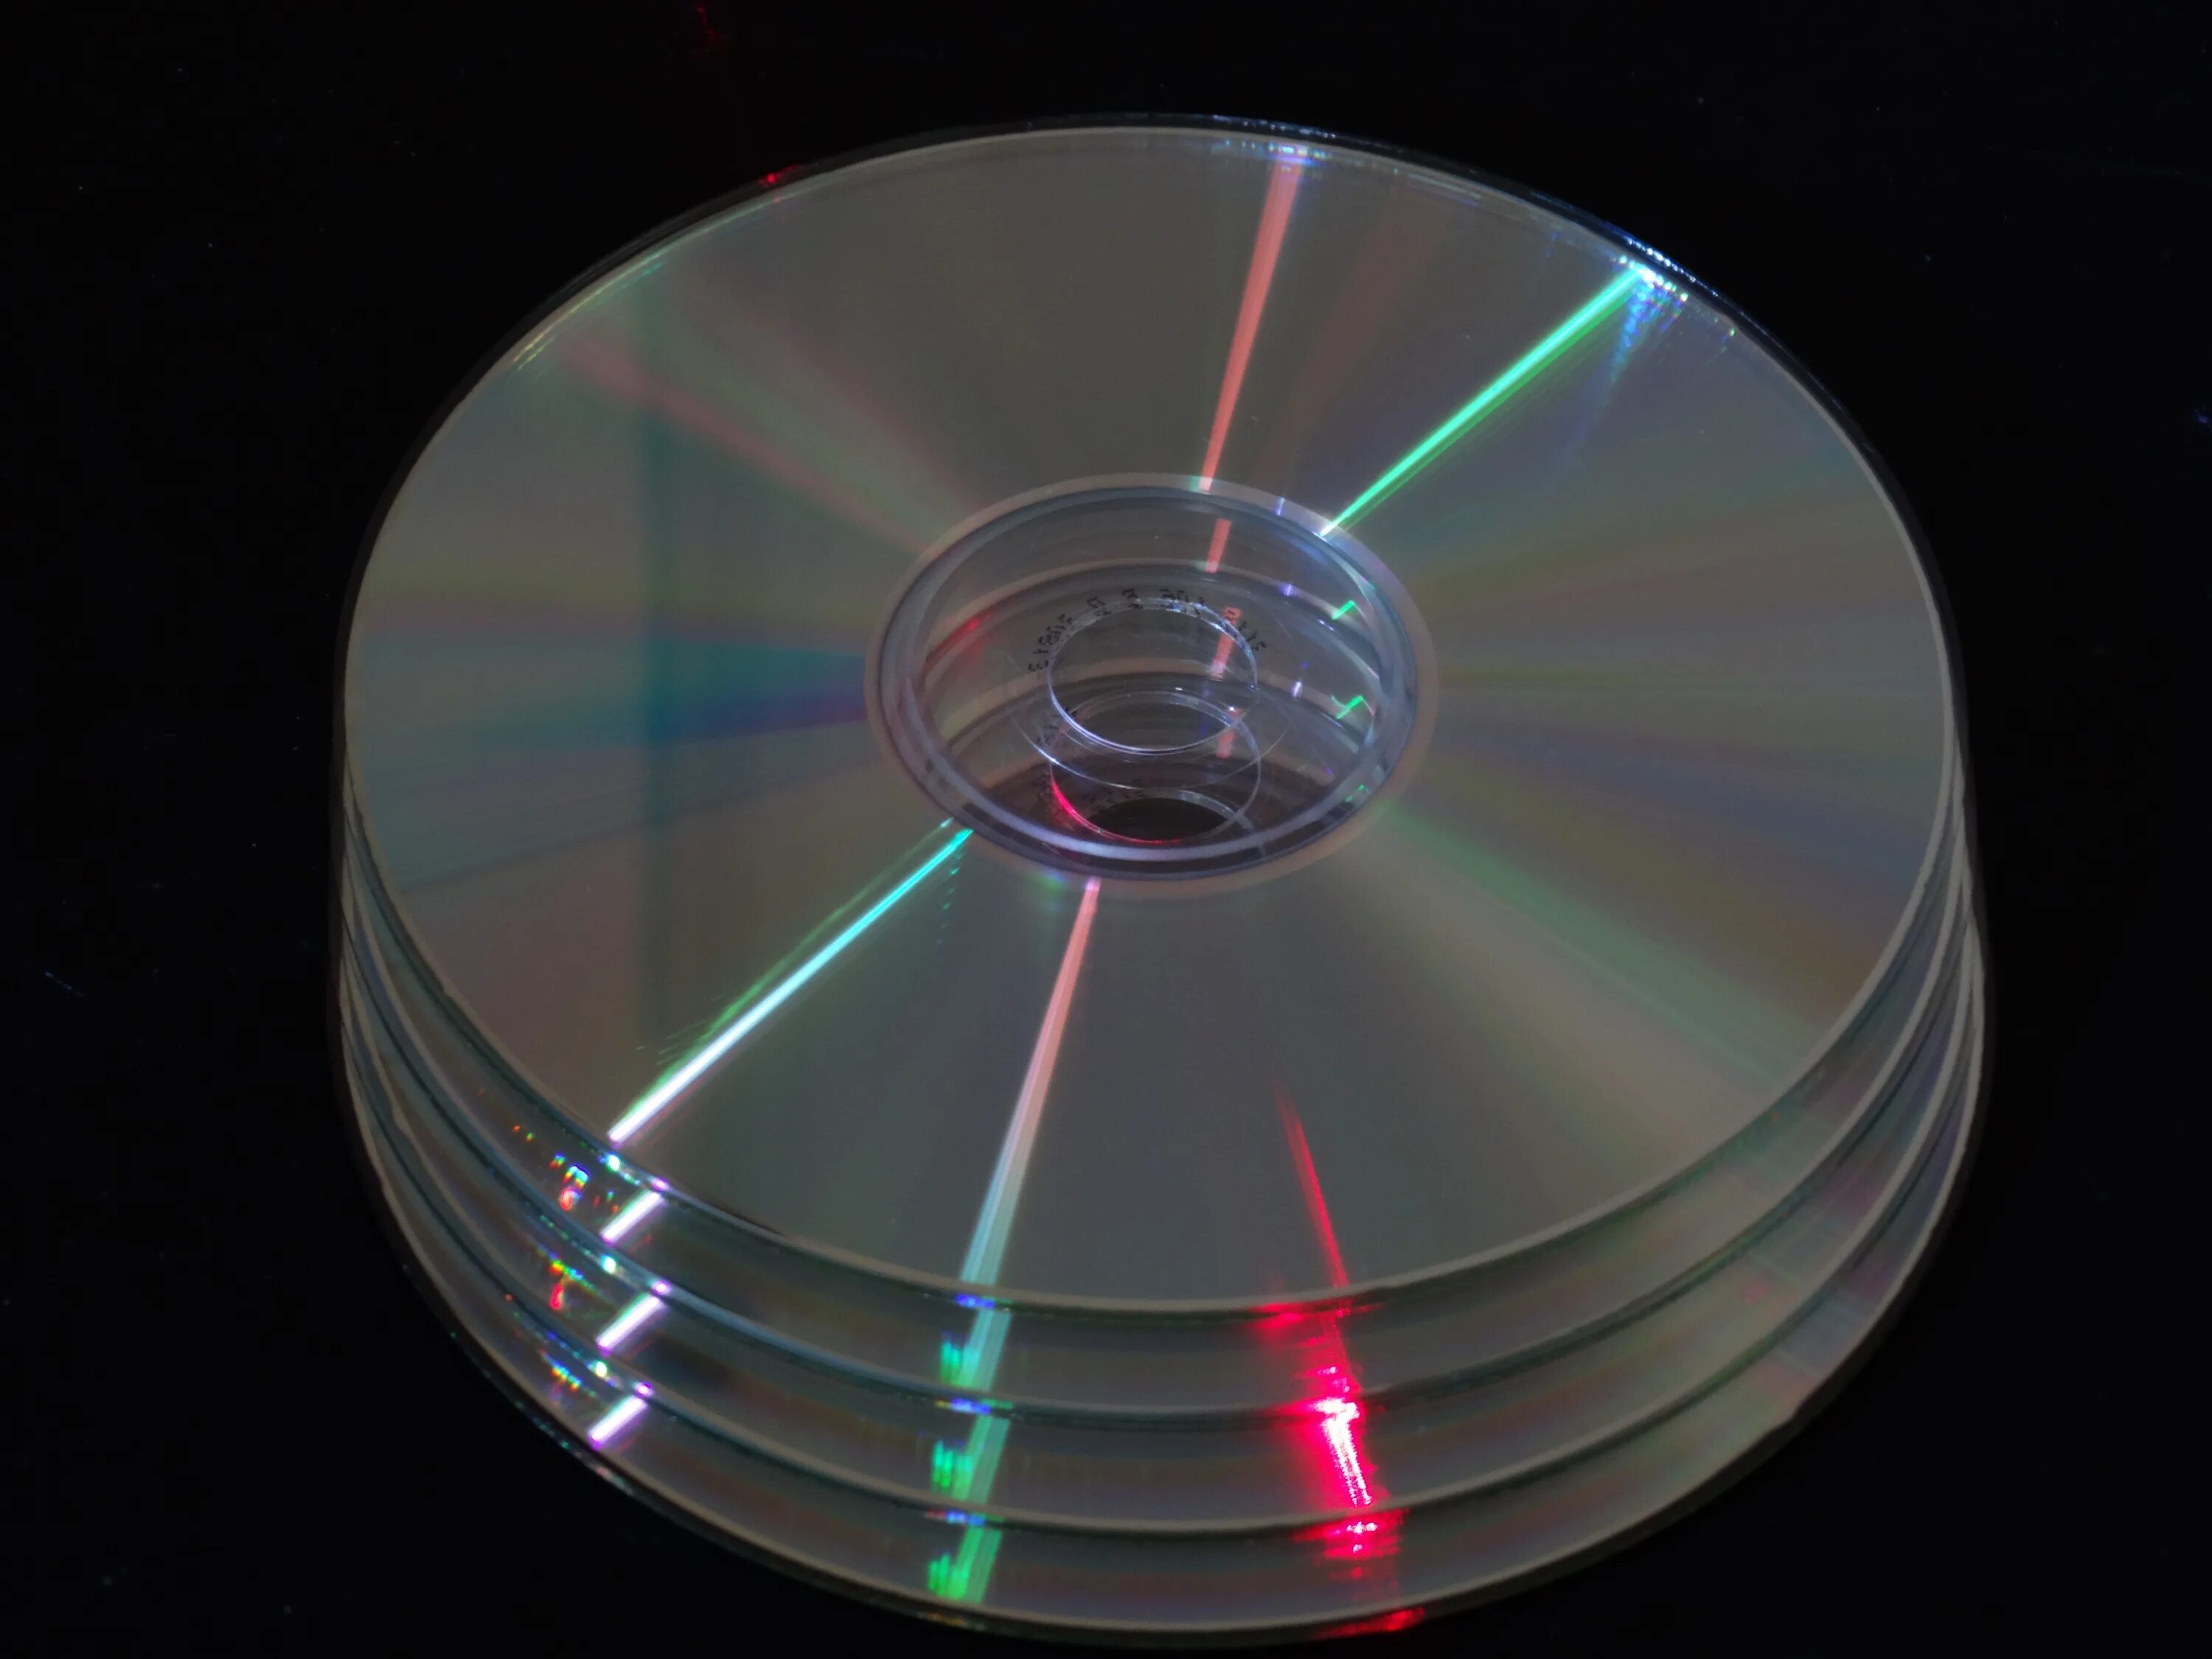 Файловый диск. CD - Compact Disk (компакт диск). Compact Disk, DVD. DVD-диски (DVD – Digital versatile Disk, цифровой универсальный диск),. Флуоресцентный многоуровневый диск FMD.